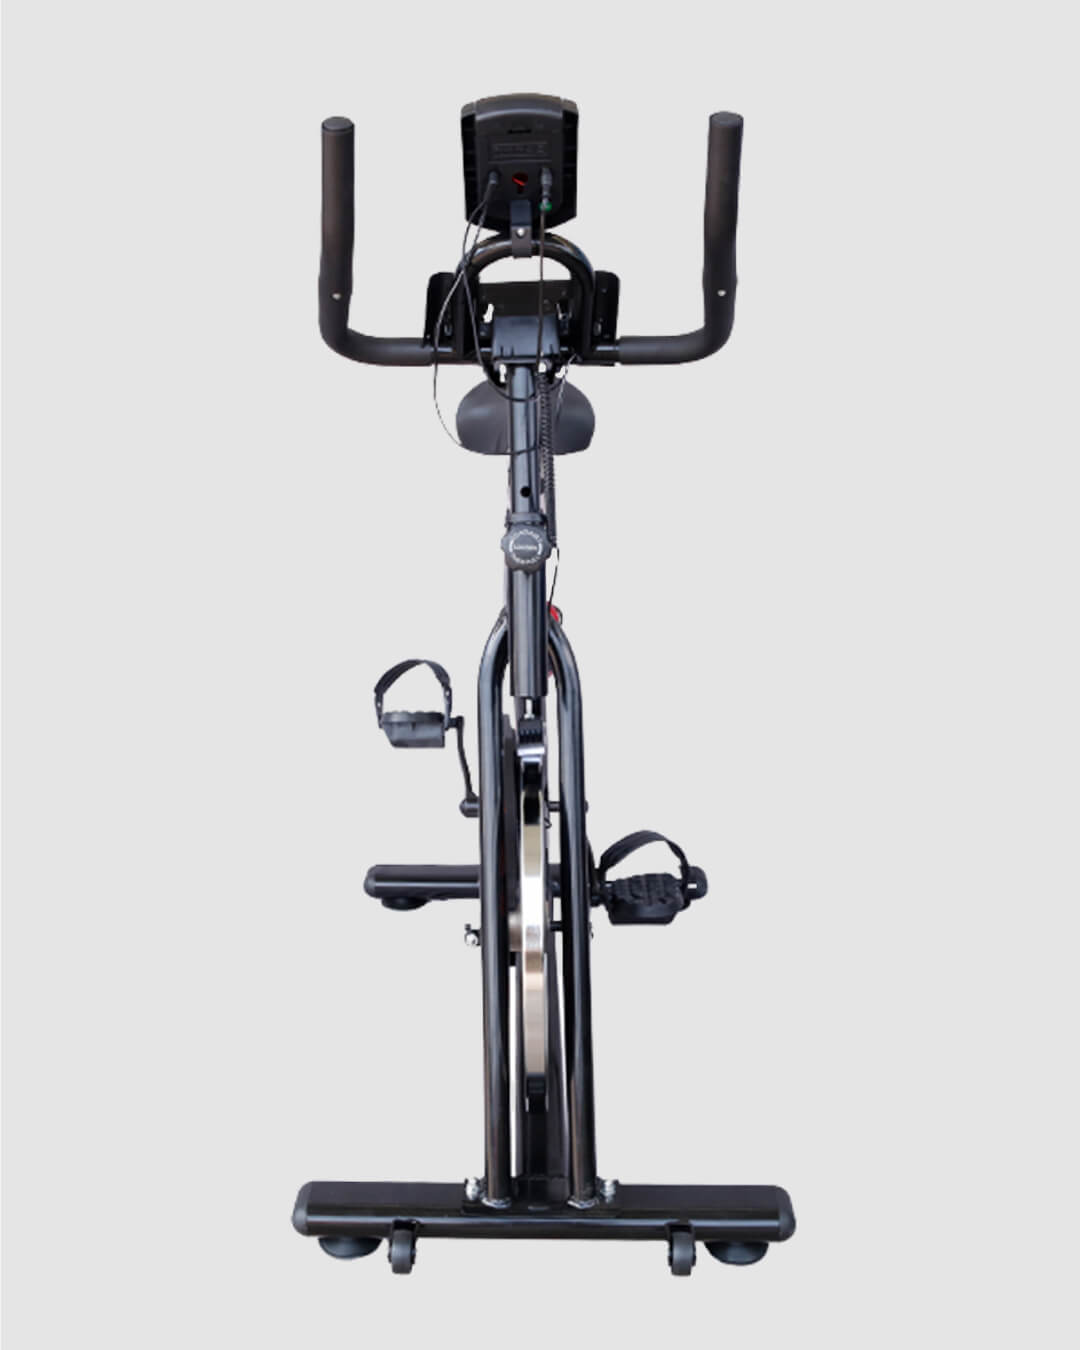 Xe đạp tập thể dục spining Airbike Sport - Hàng chính hãng